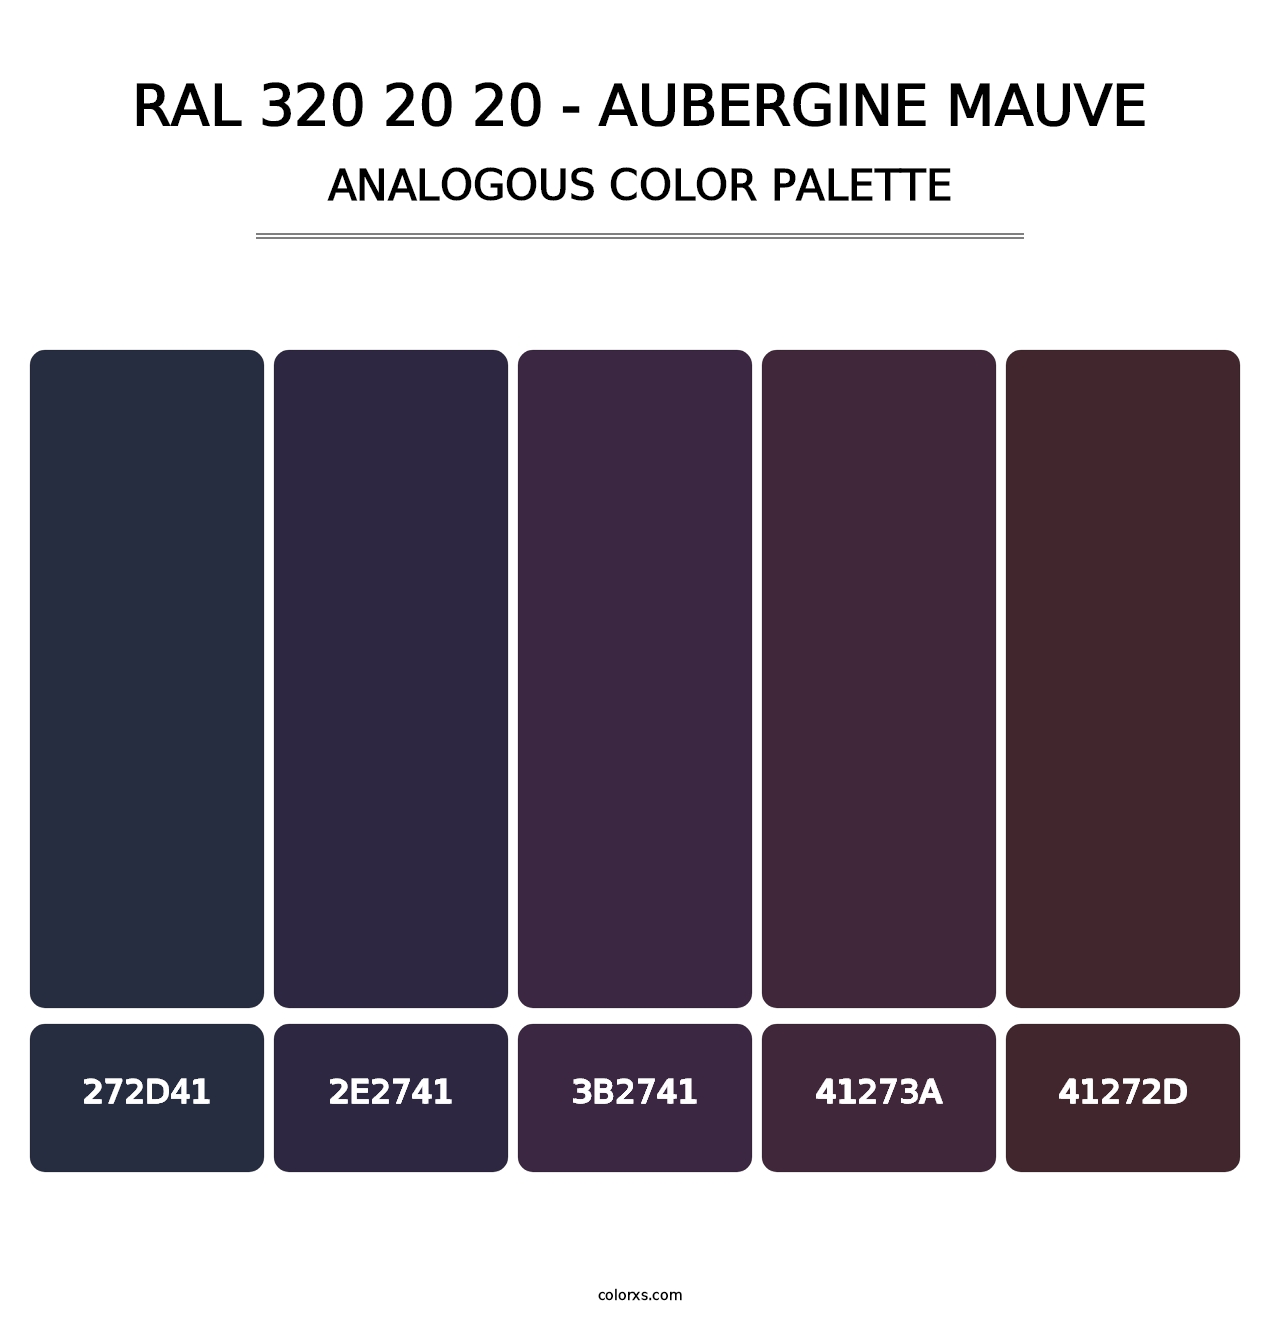 RAL 320 20 20 - Aubergine Mauve - Analogous Color Palette